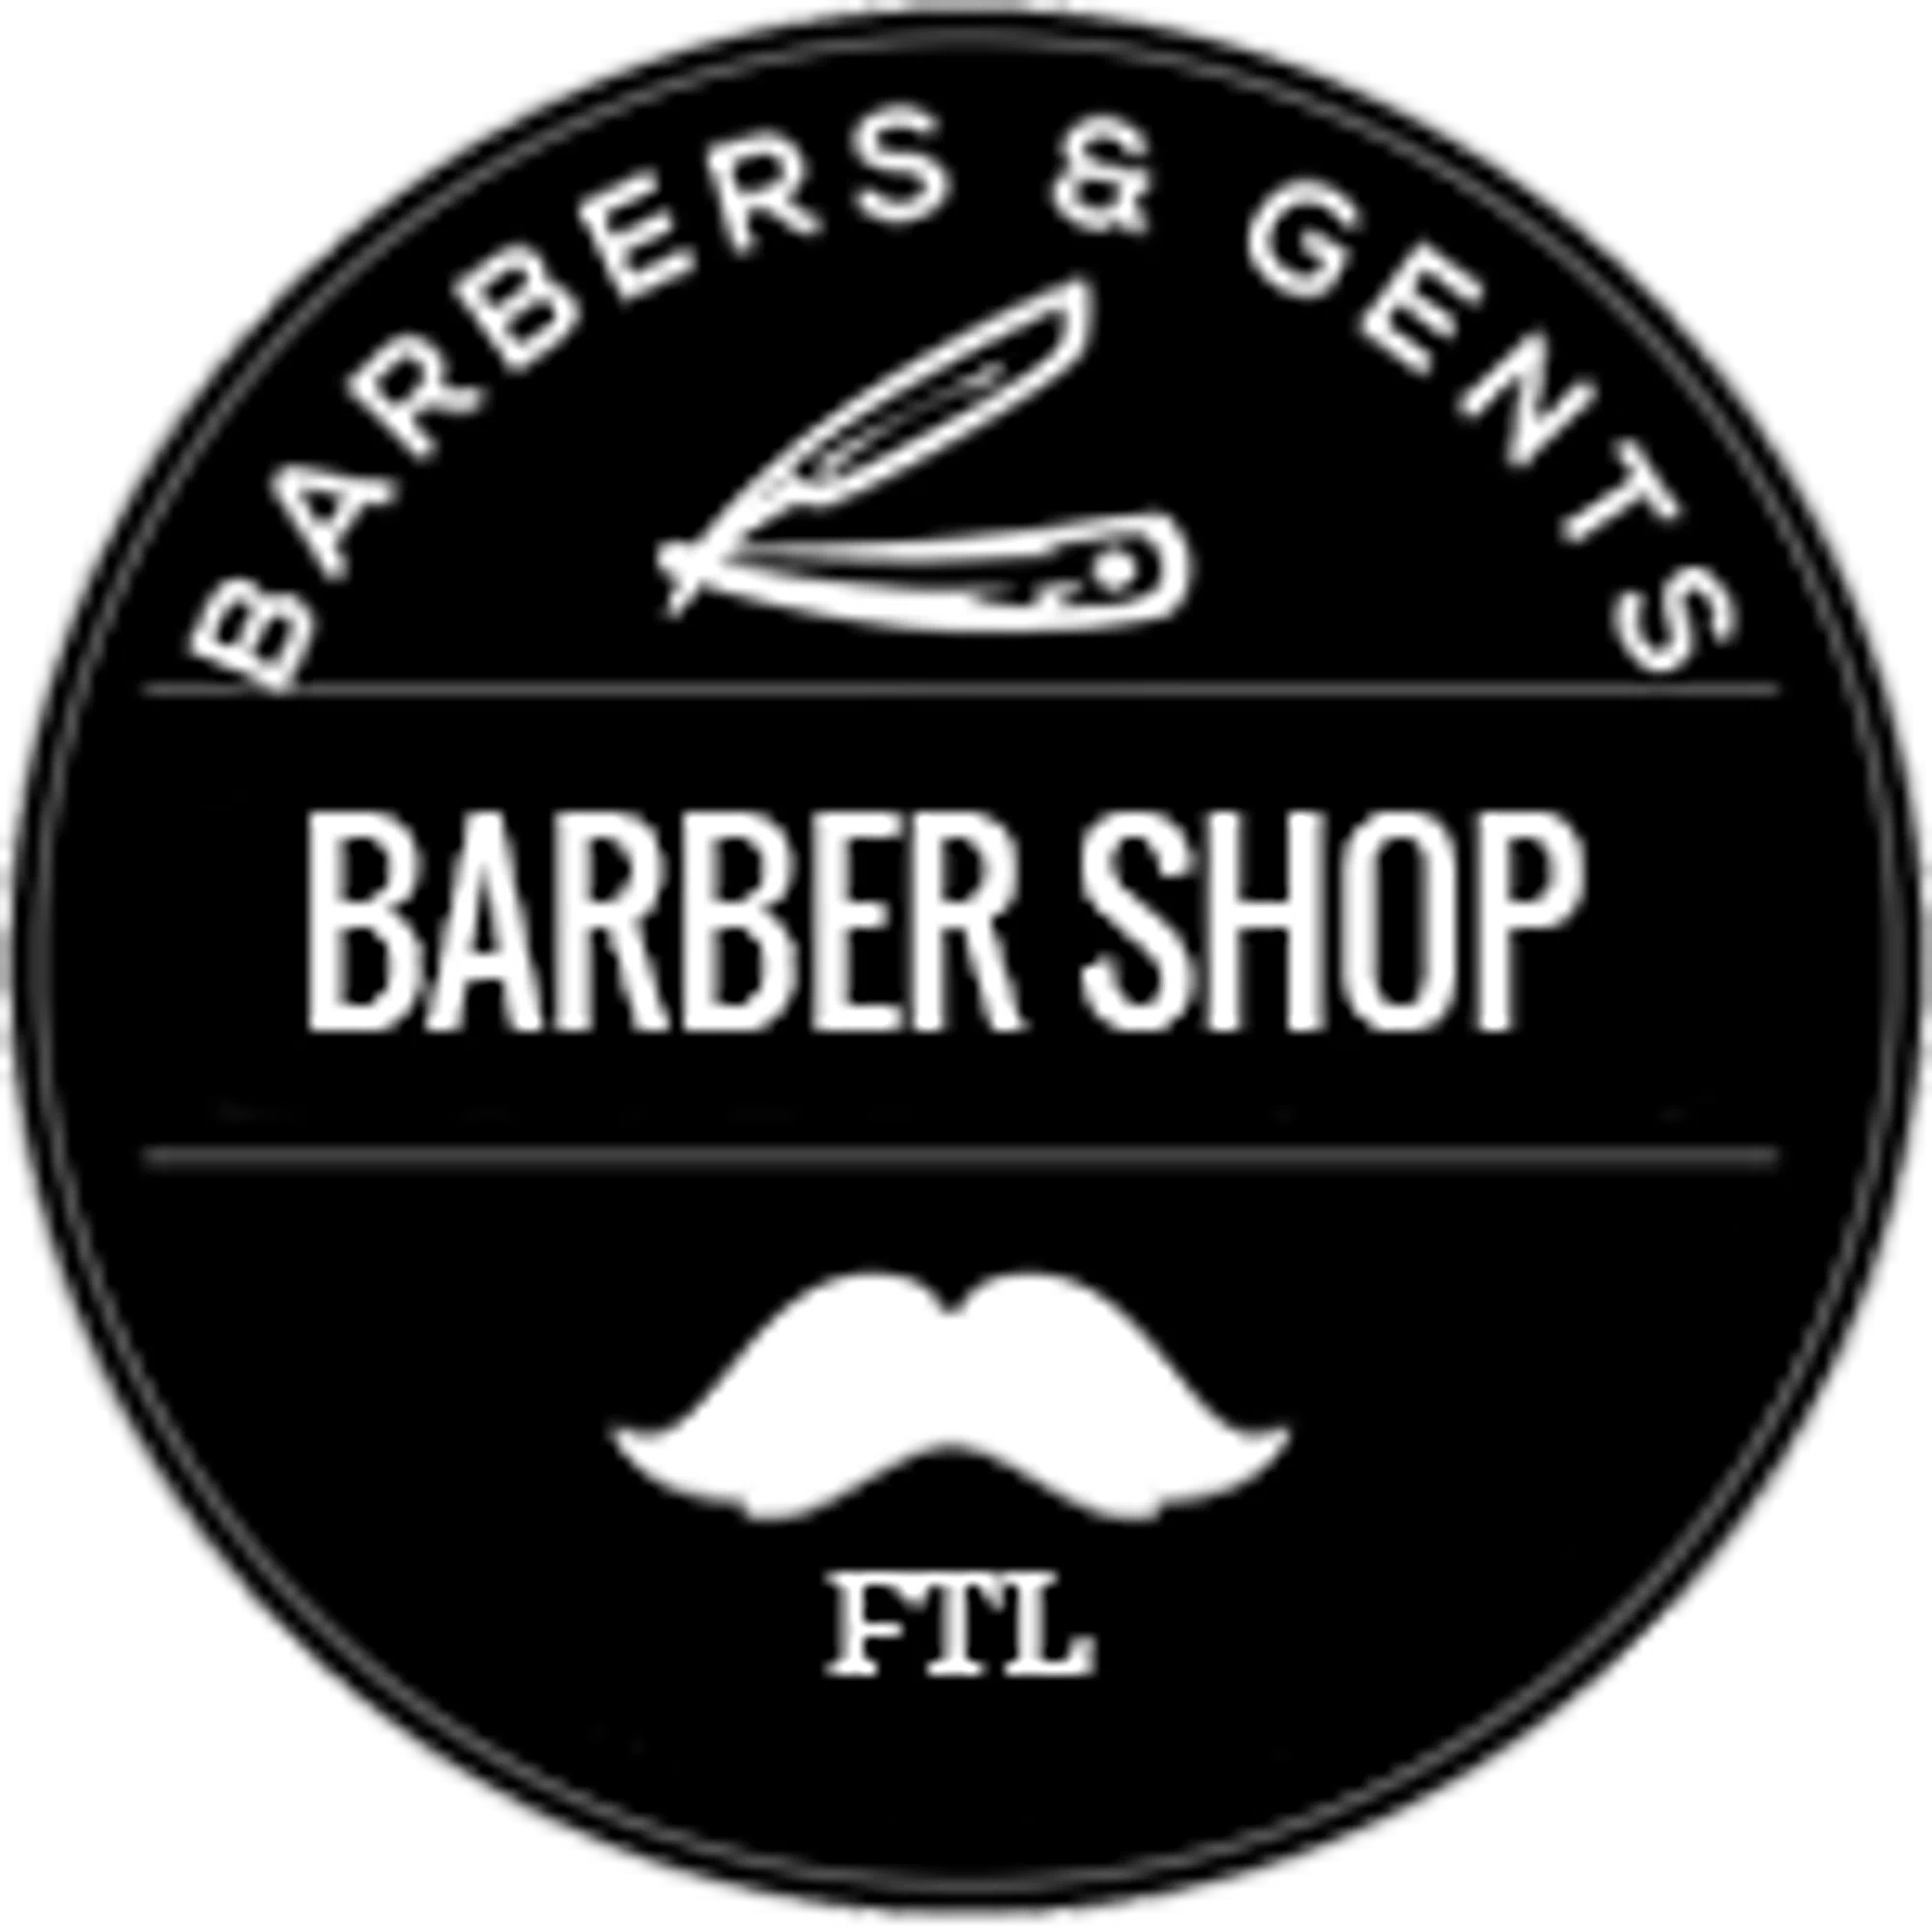 Barbers & Gents FTL